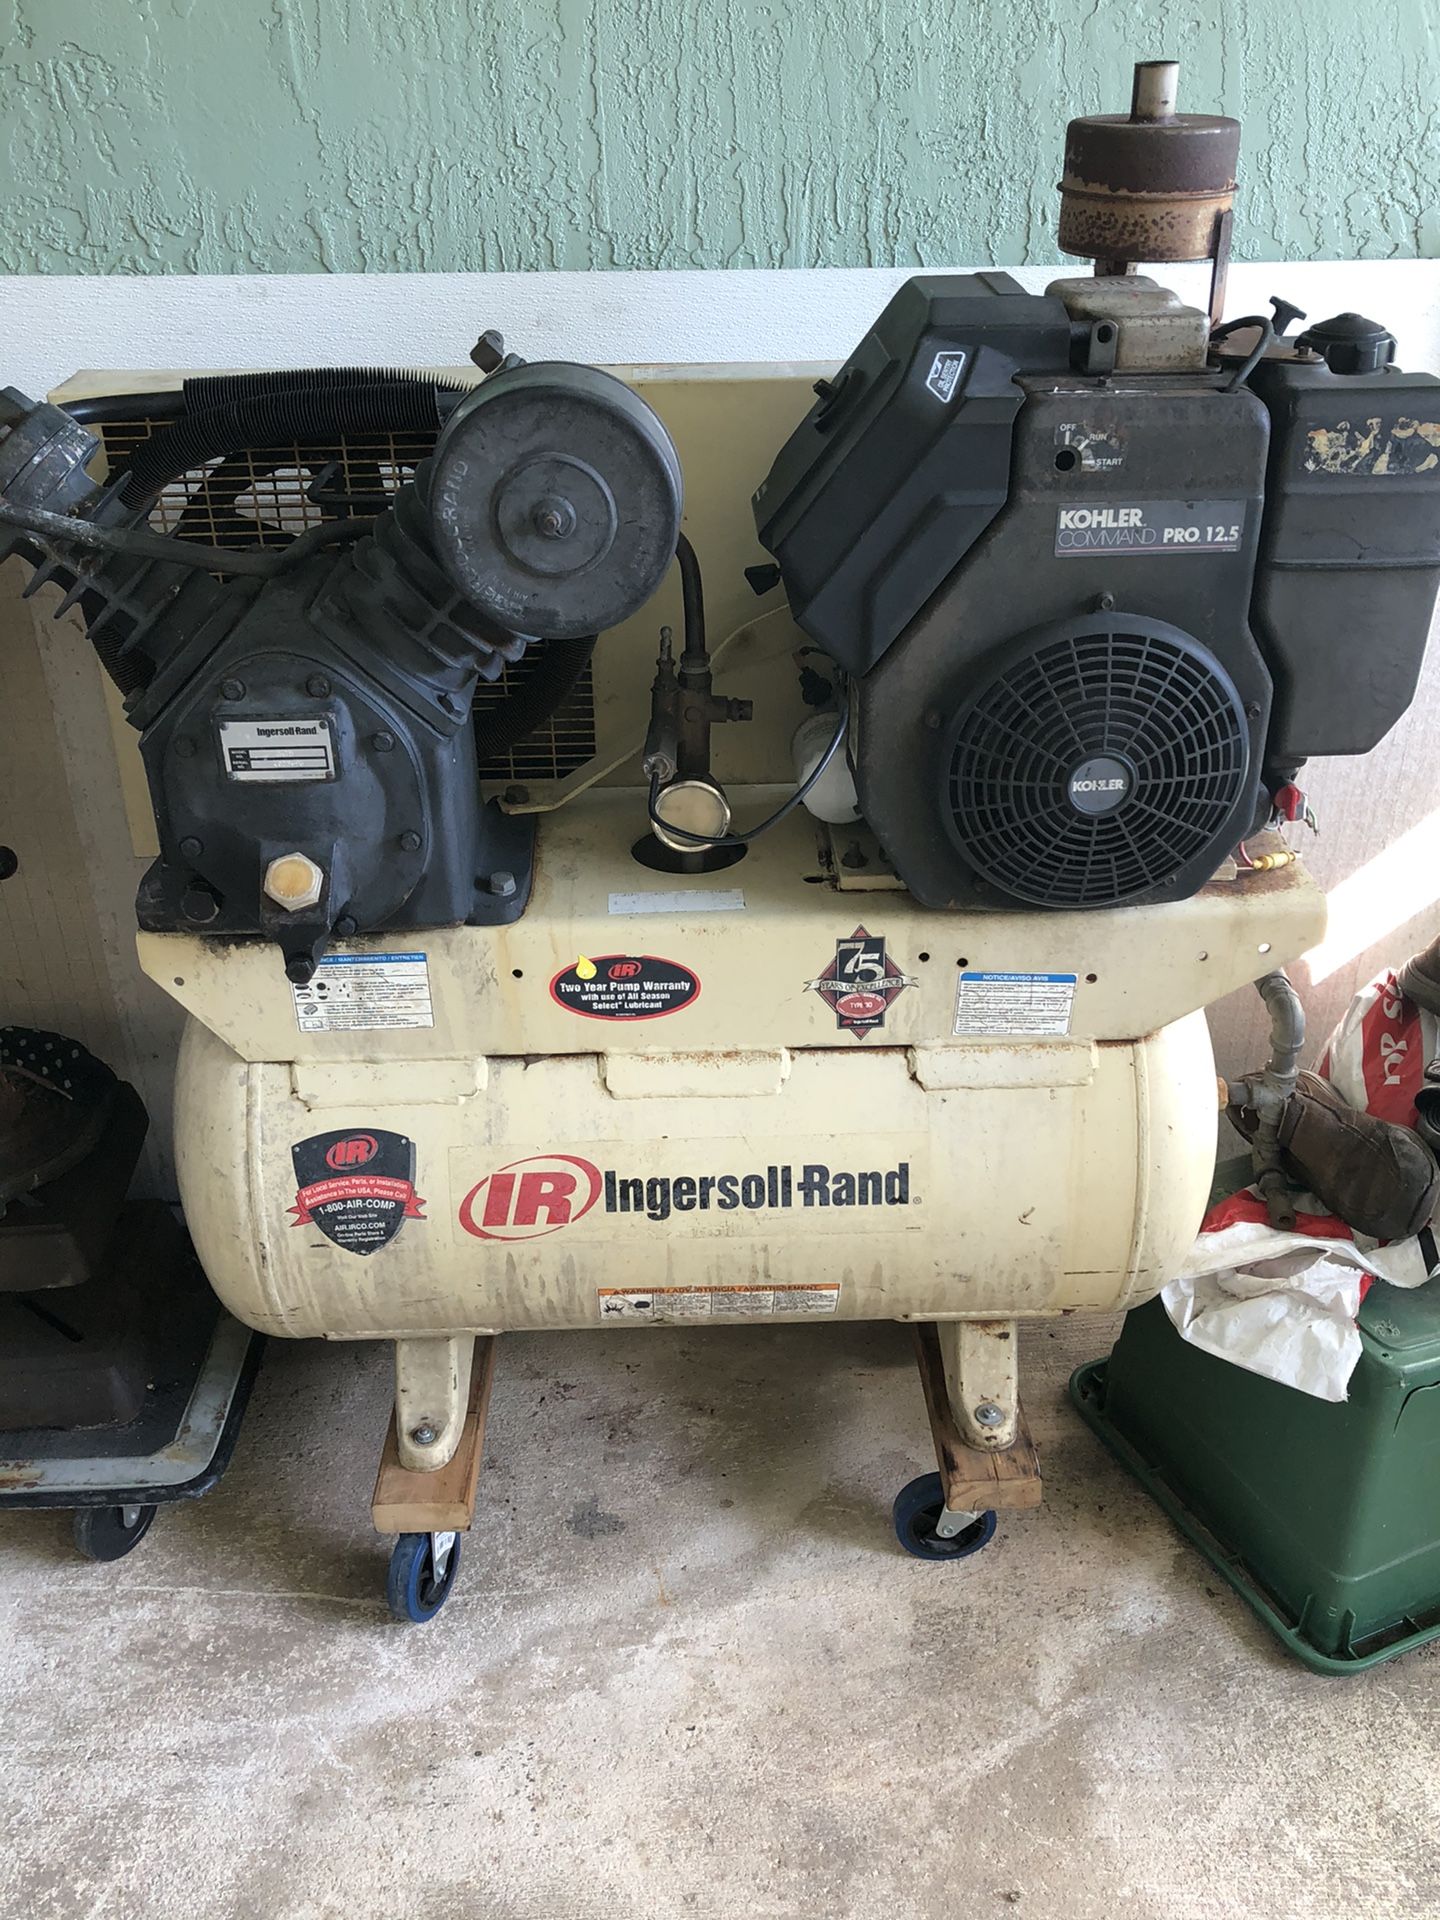 Air compressor infers I’ll rand